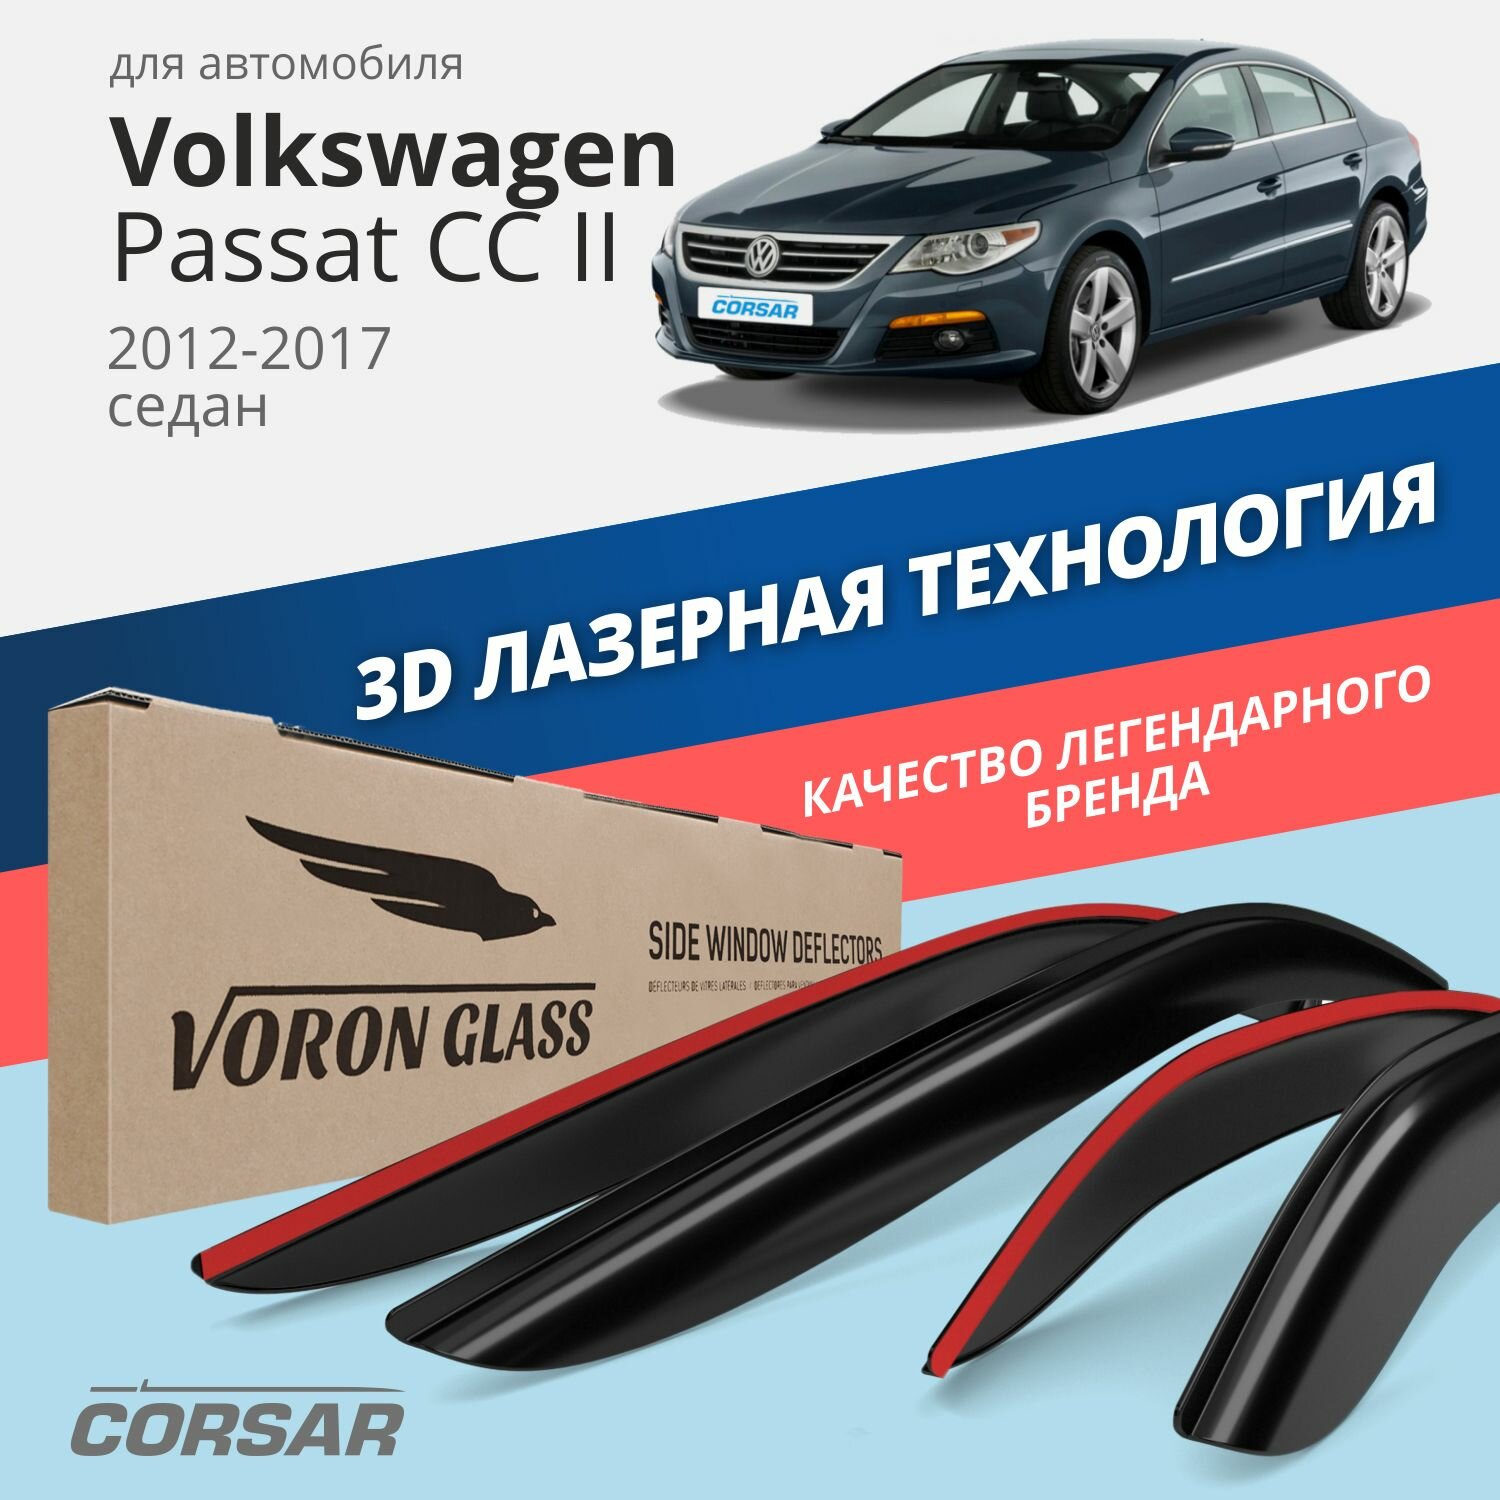 Дефлекторы окон Voron Glass серия Corsar для Volkswagen Passat CC II 2012-2017 седан накладные 4 шт.